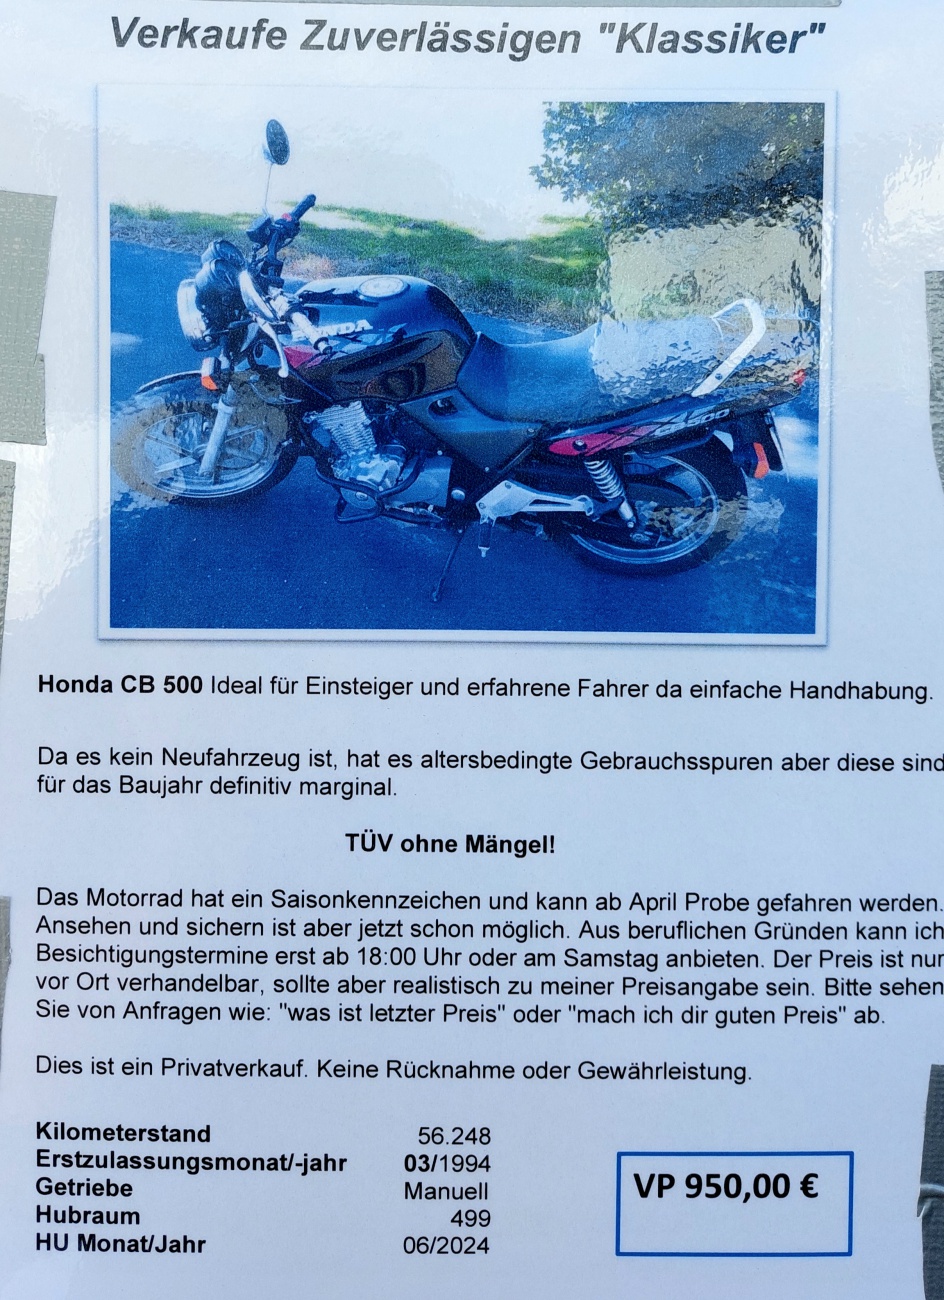 Foto: Martin Zehrer - Honda CB 500<br />
<br />
Motorrad zum Verkauf... hängt beim Daubner in Neusorg an der Tankstelle aus! ,-) 